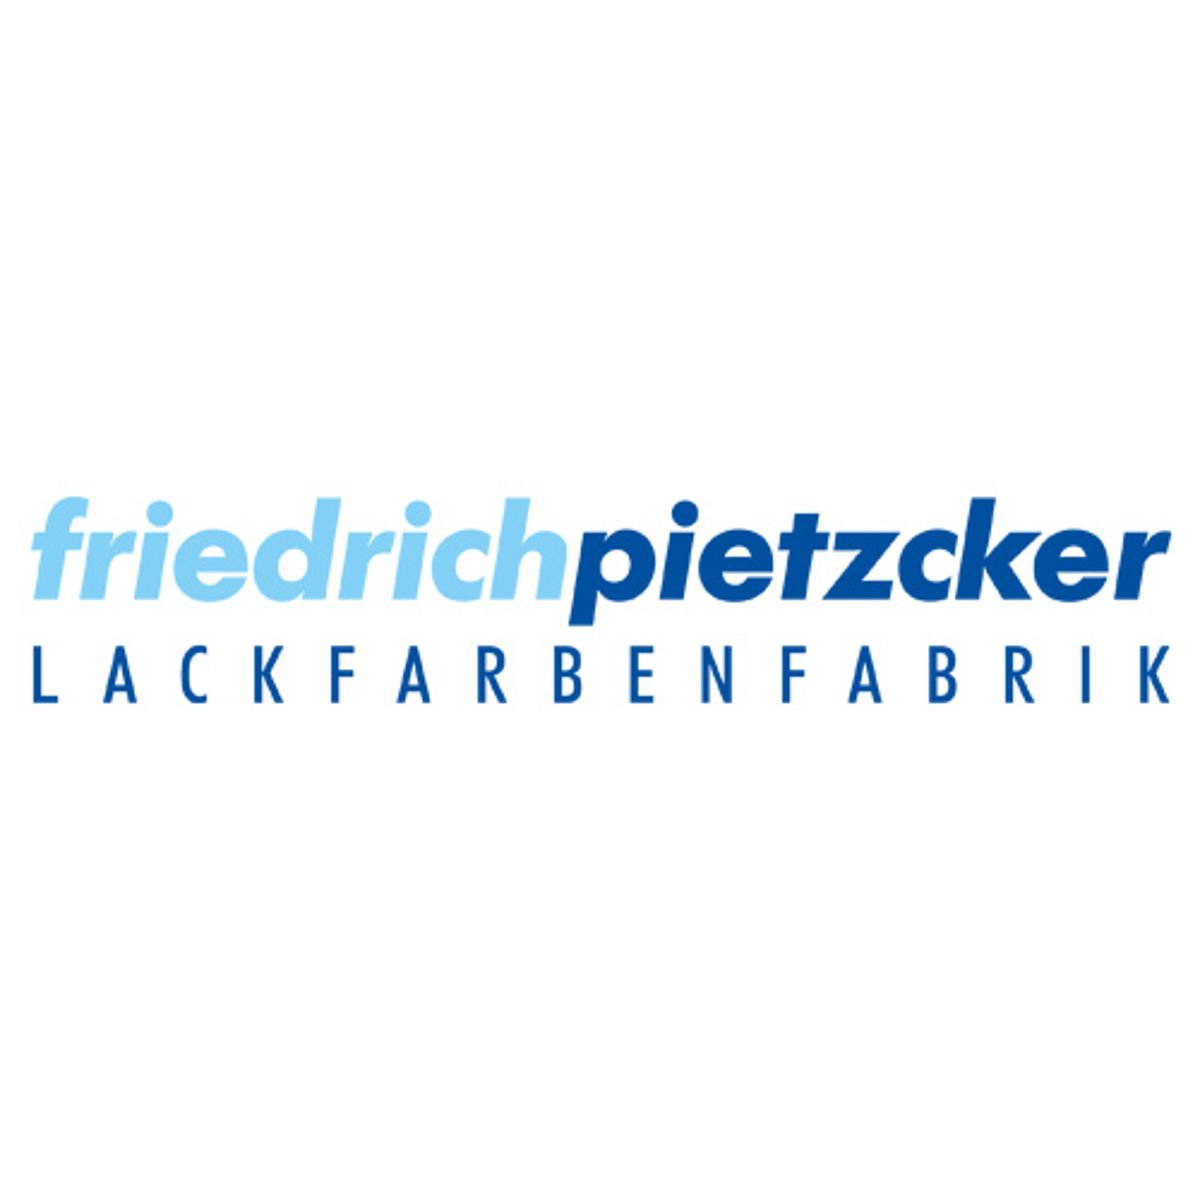 (c) Pietzcker.com